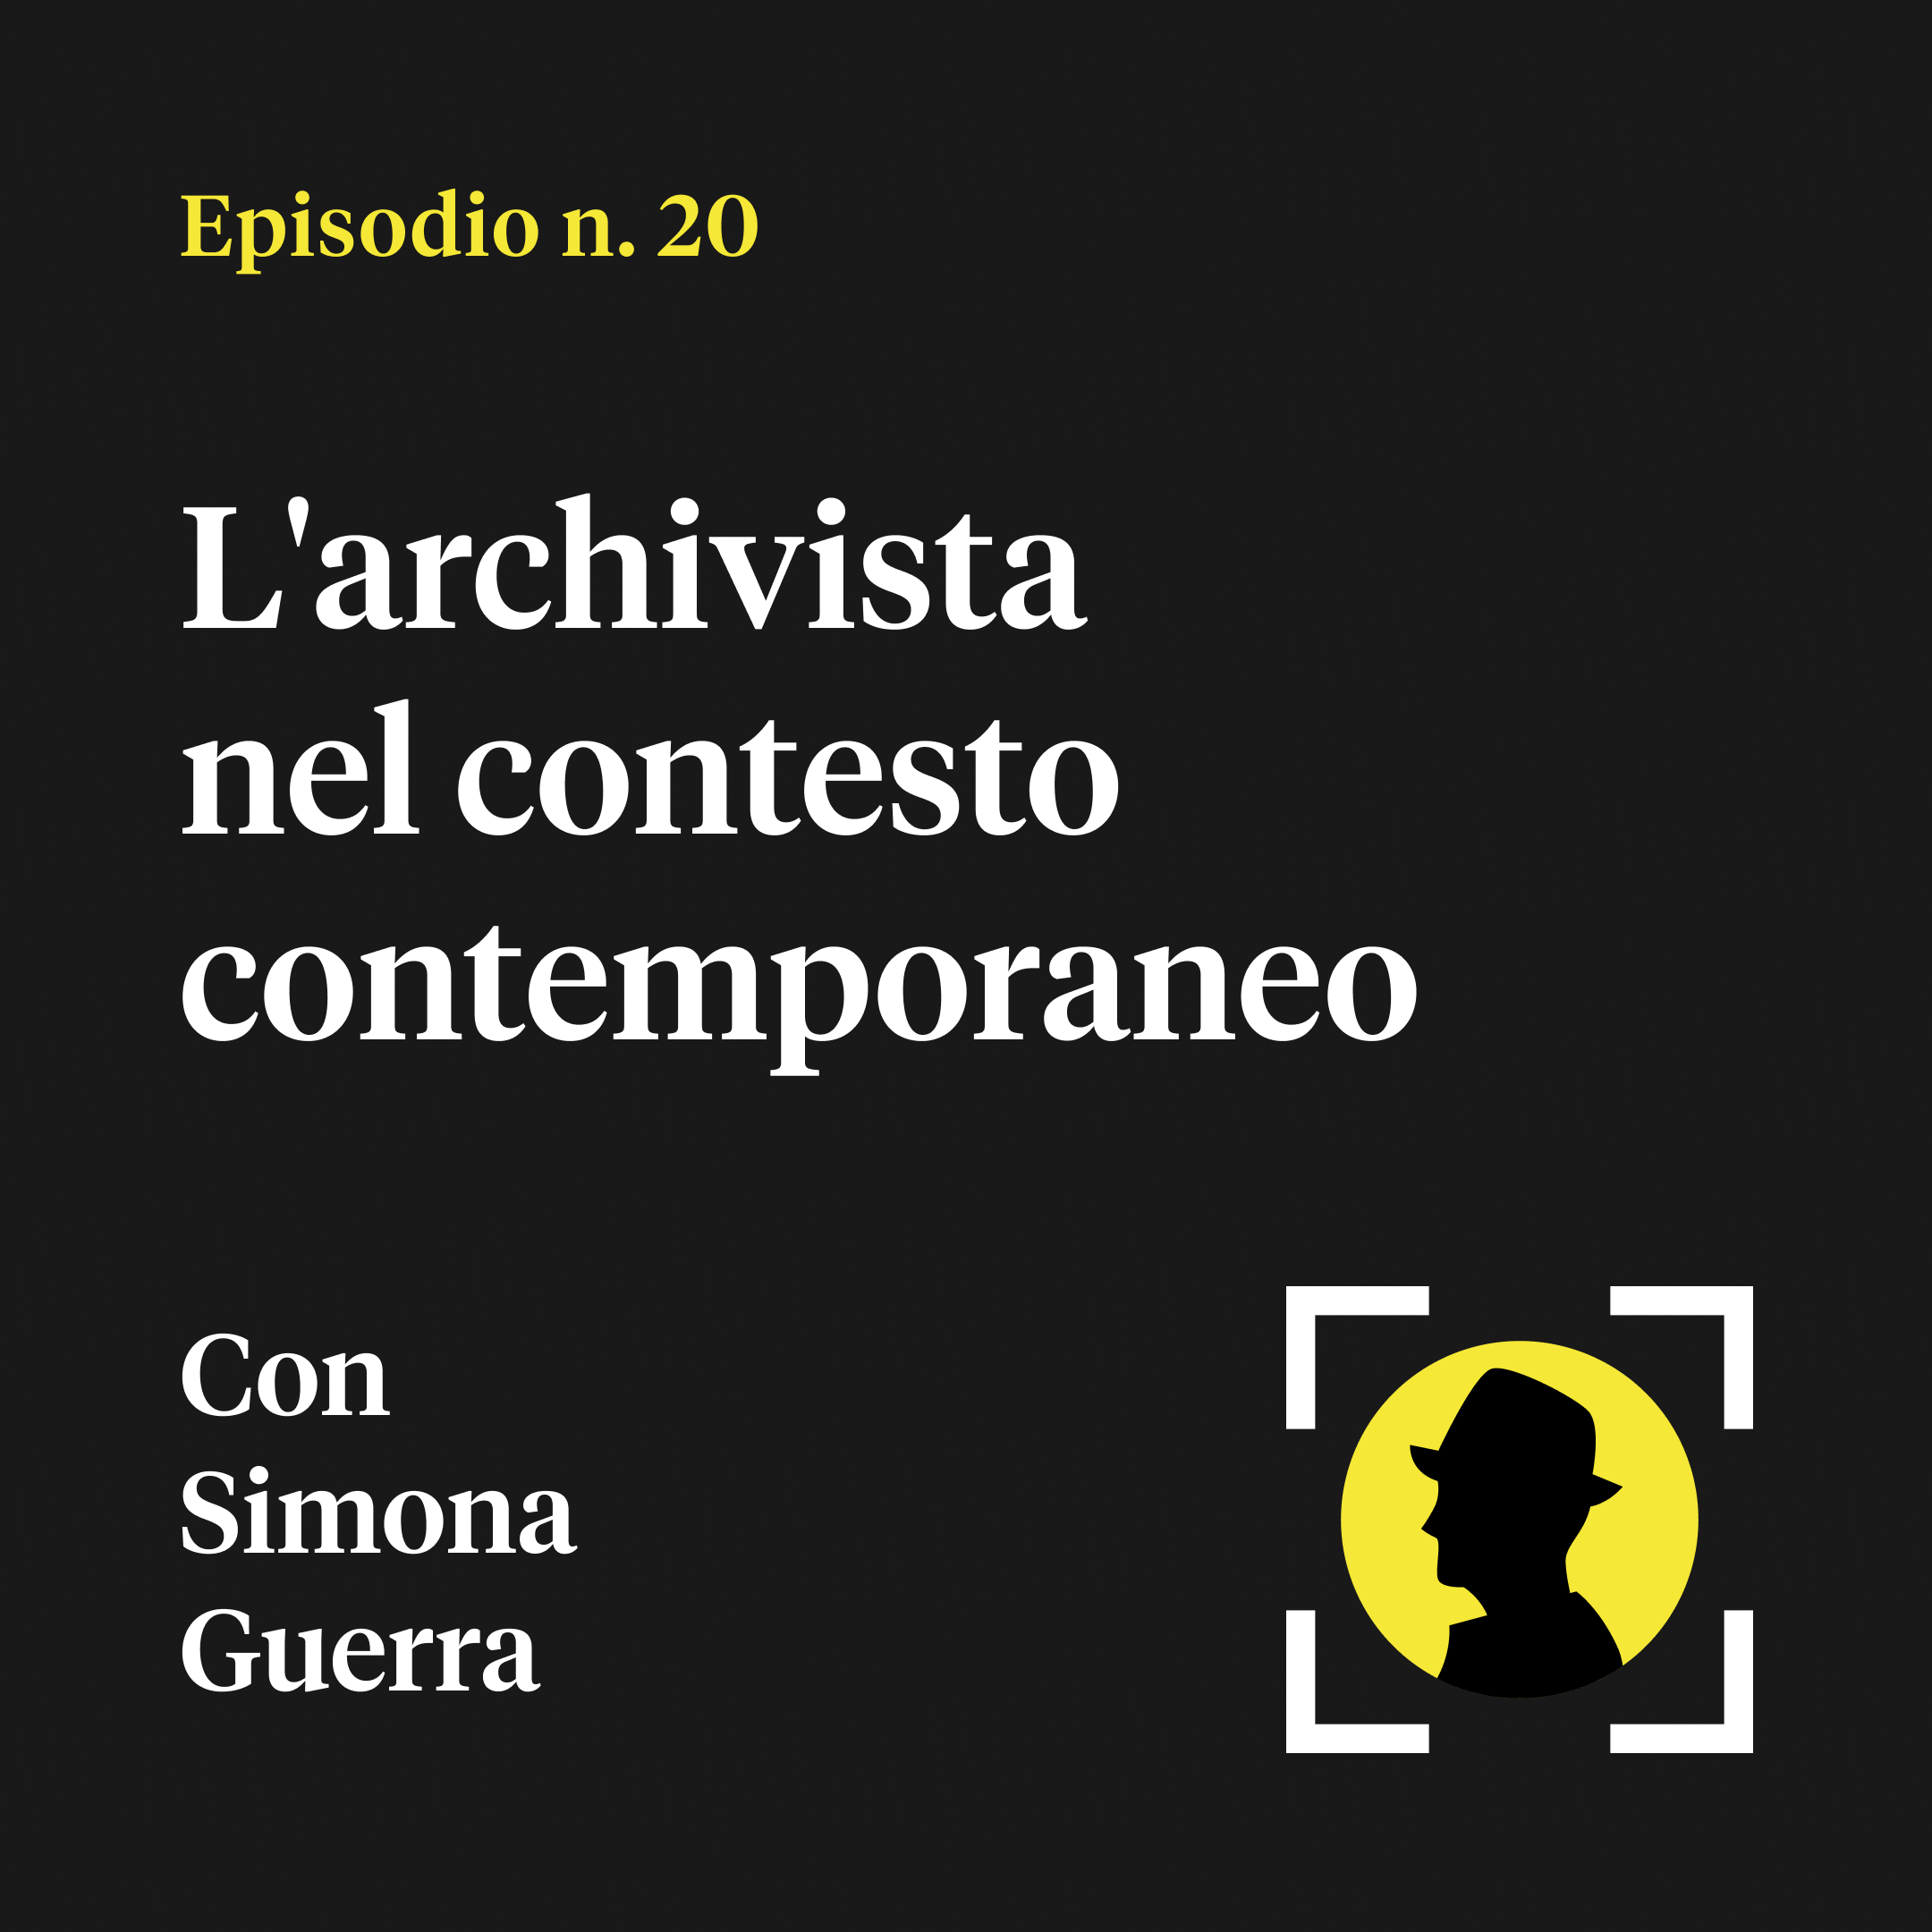 L'archivista nel contesto contemporaneo - con Simona Guerra